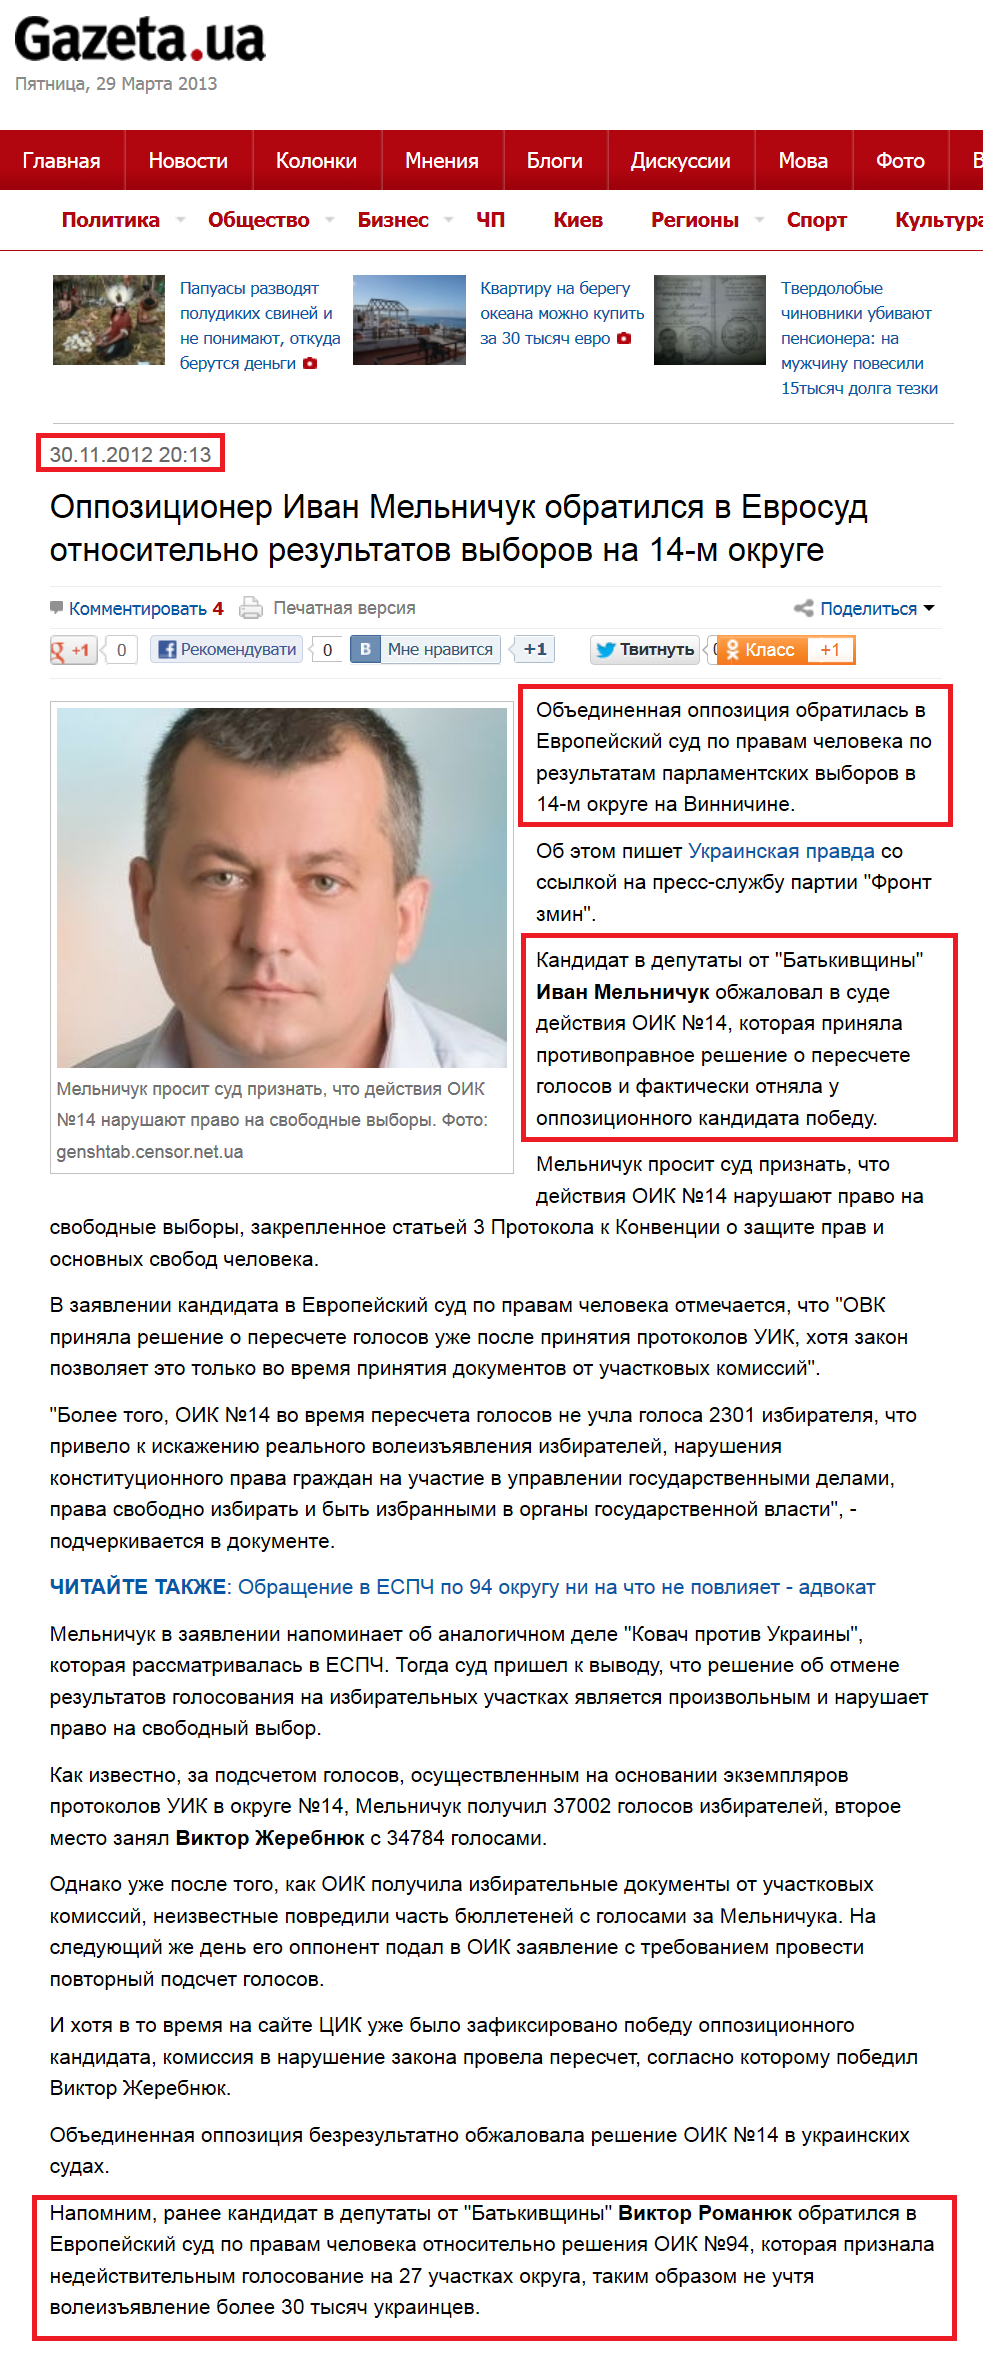 http://gazeta.ua/ru/articles/politics/_oppozicioner-ivan-melnichuk-obratilsya-v-evrosud-otnositelno-rezultatov-vyborov-/470234